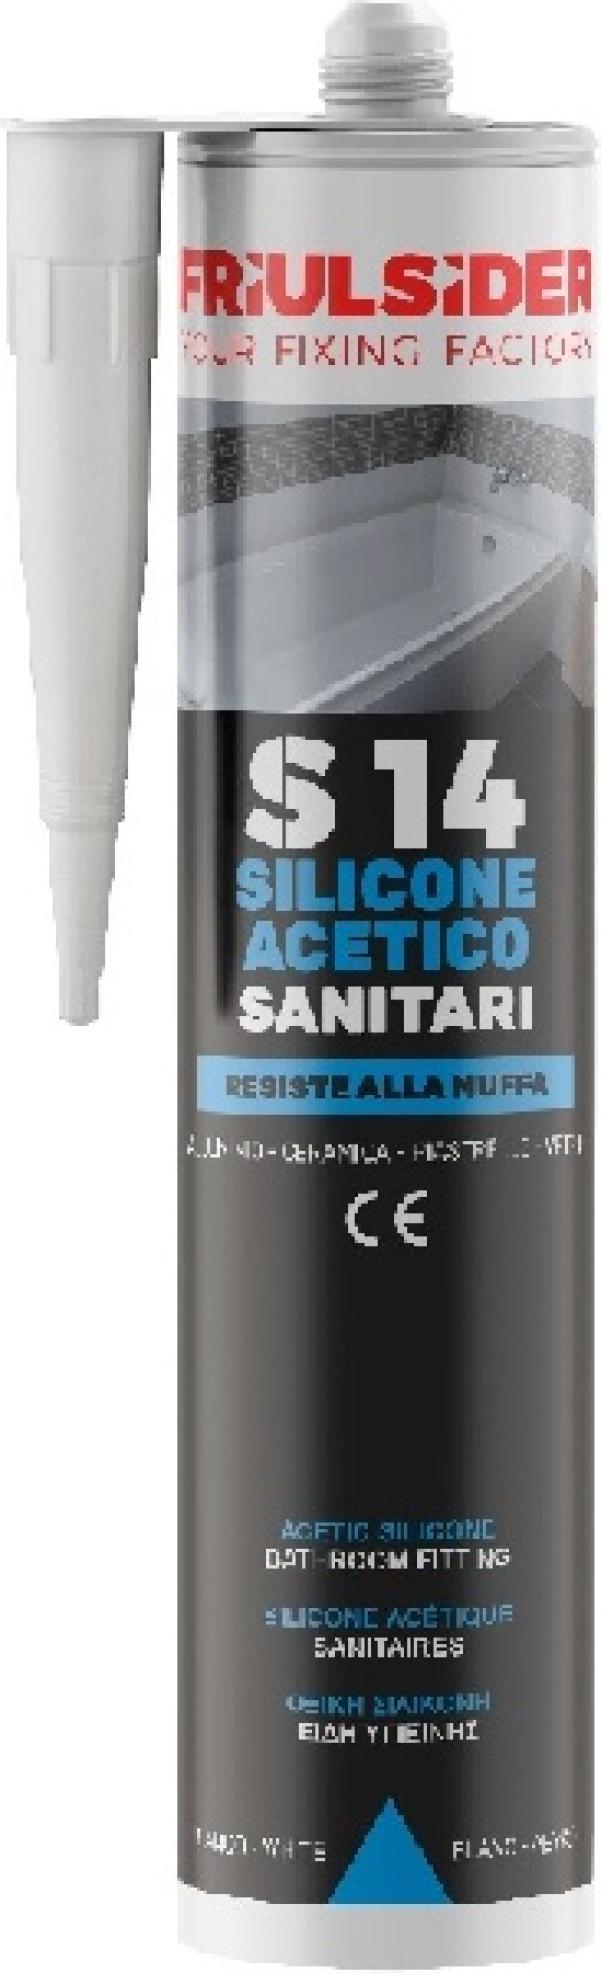 Silicone acetico sanitari bianco ral9010 280 ml Friulsider S1401